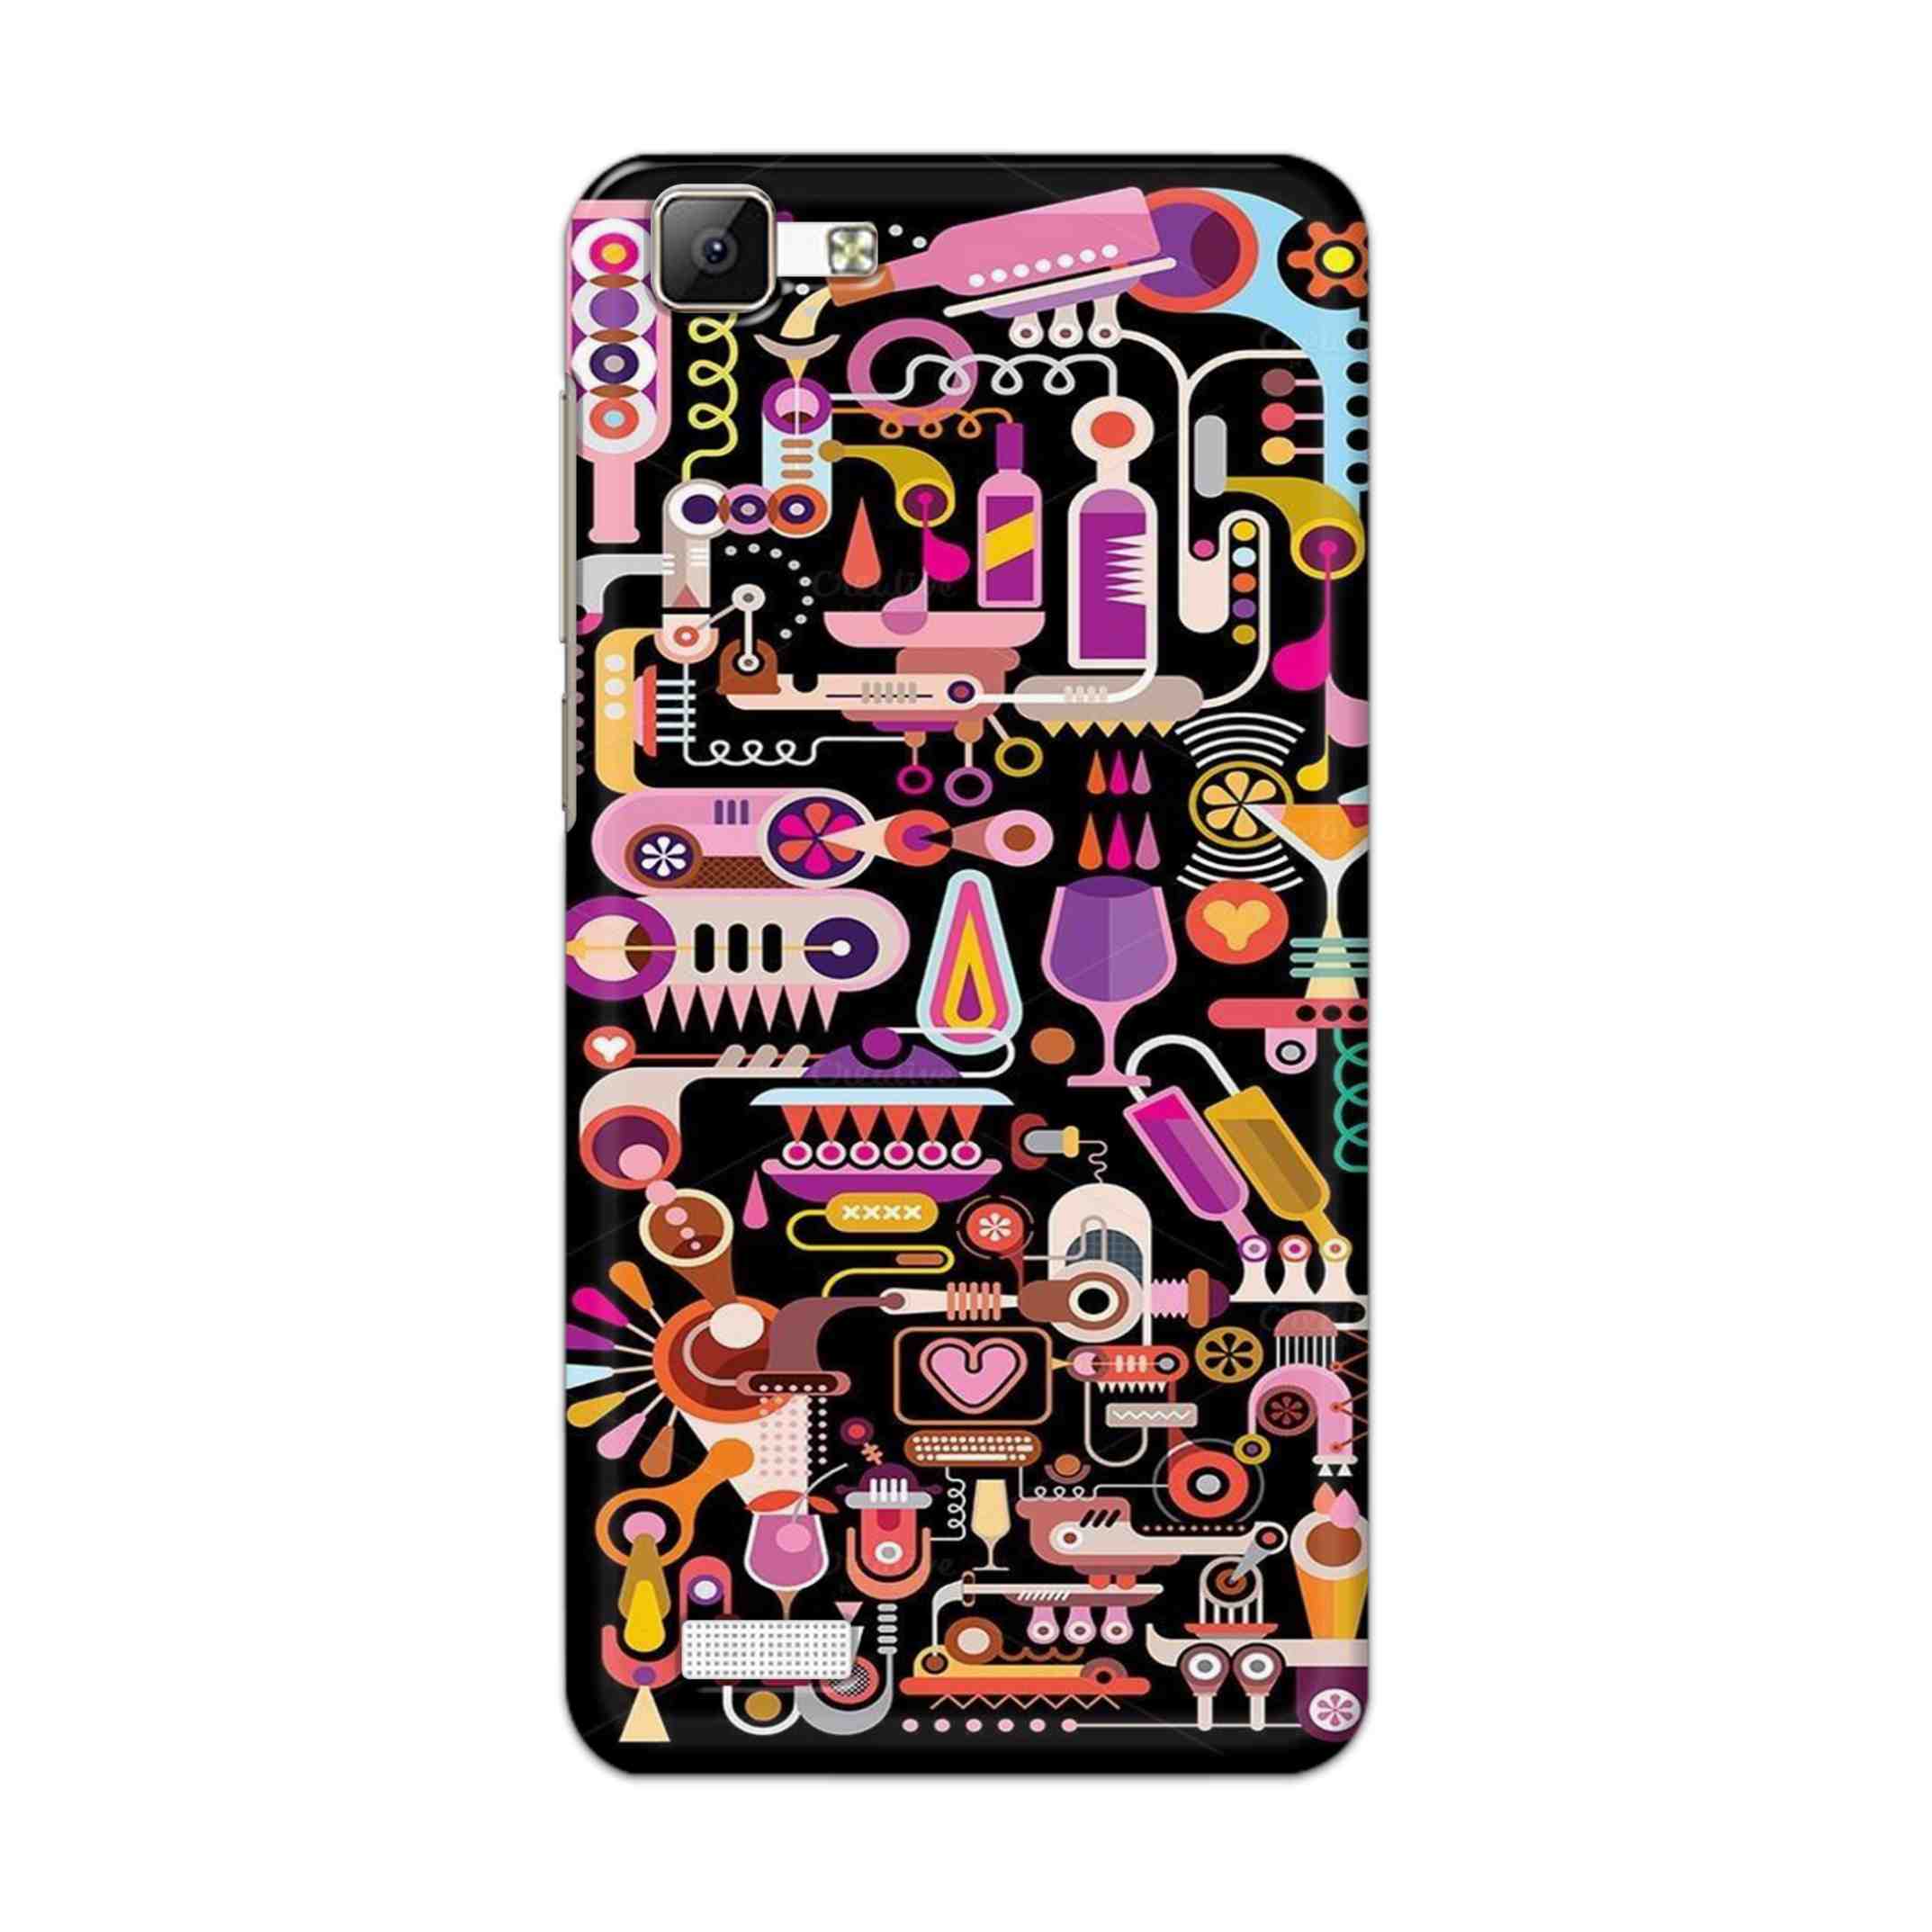 Buy Lab Art Hard Back Mobile Phone Case Cover For Vivo Y35 Online